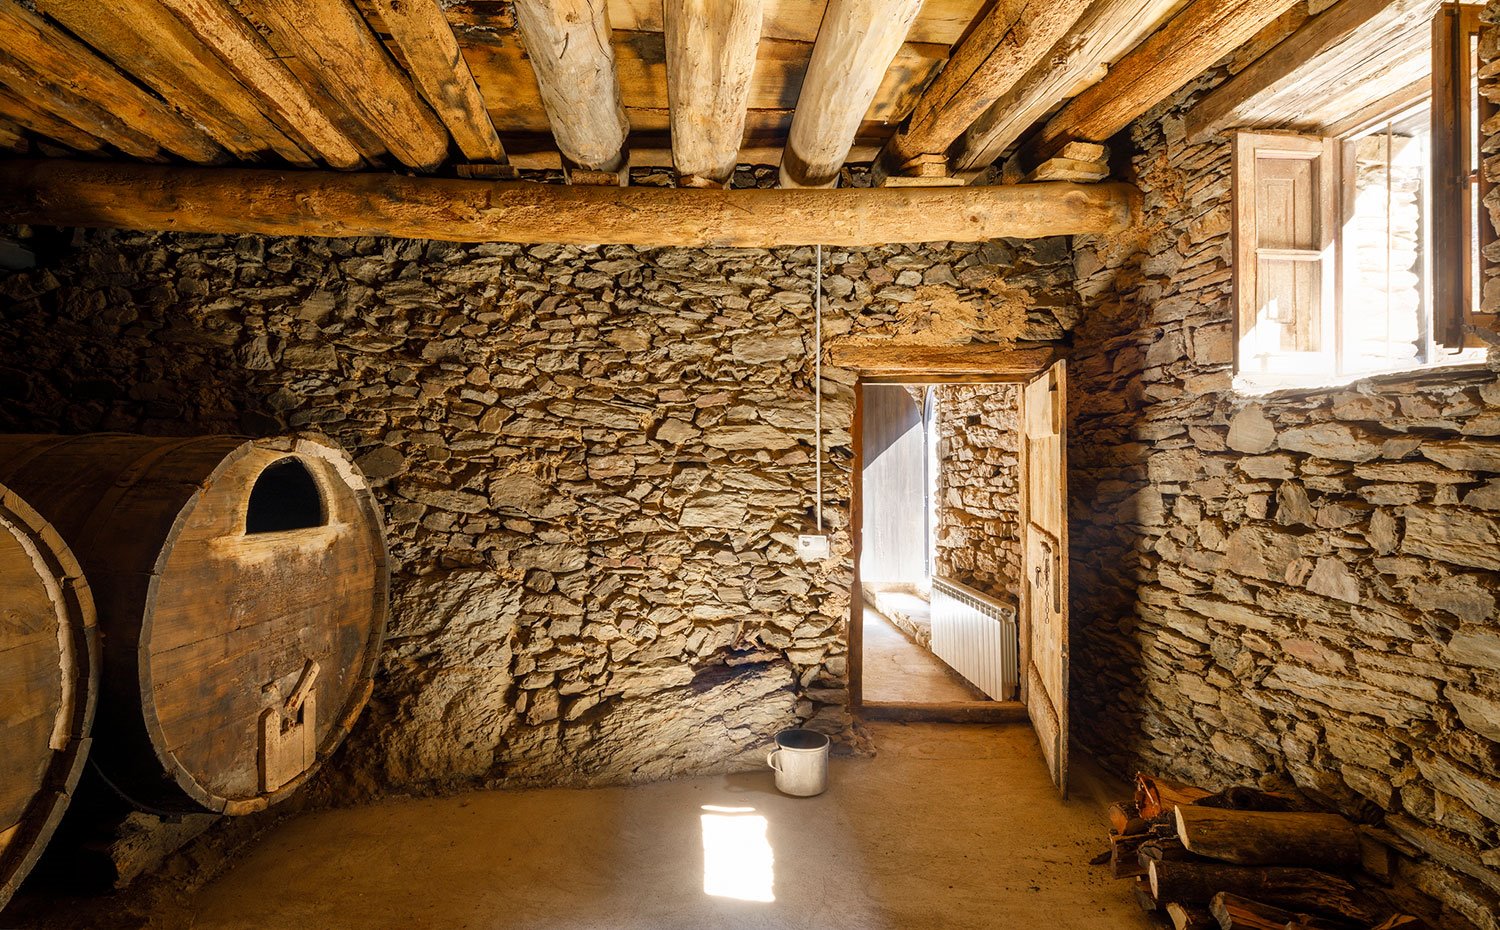 Interior habitación con paredes de piedra, vigas de madera en el techo y grandes tinajas antiguas